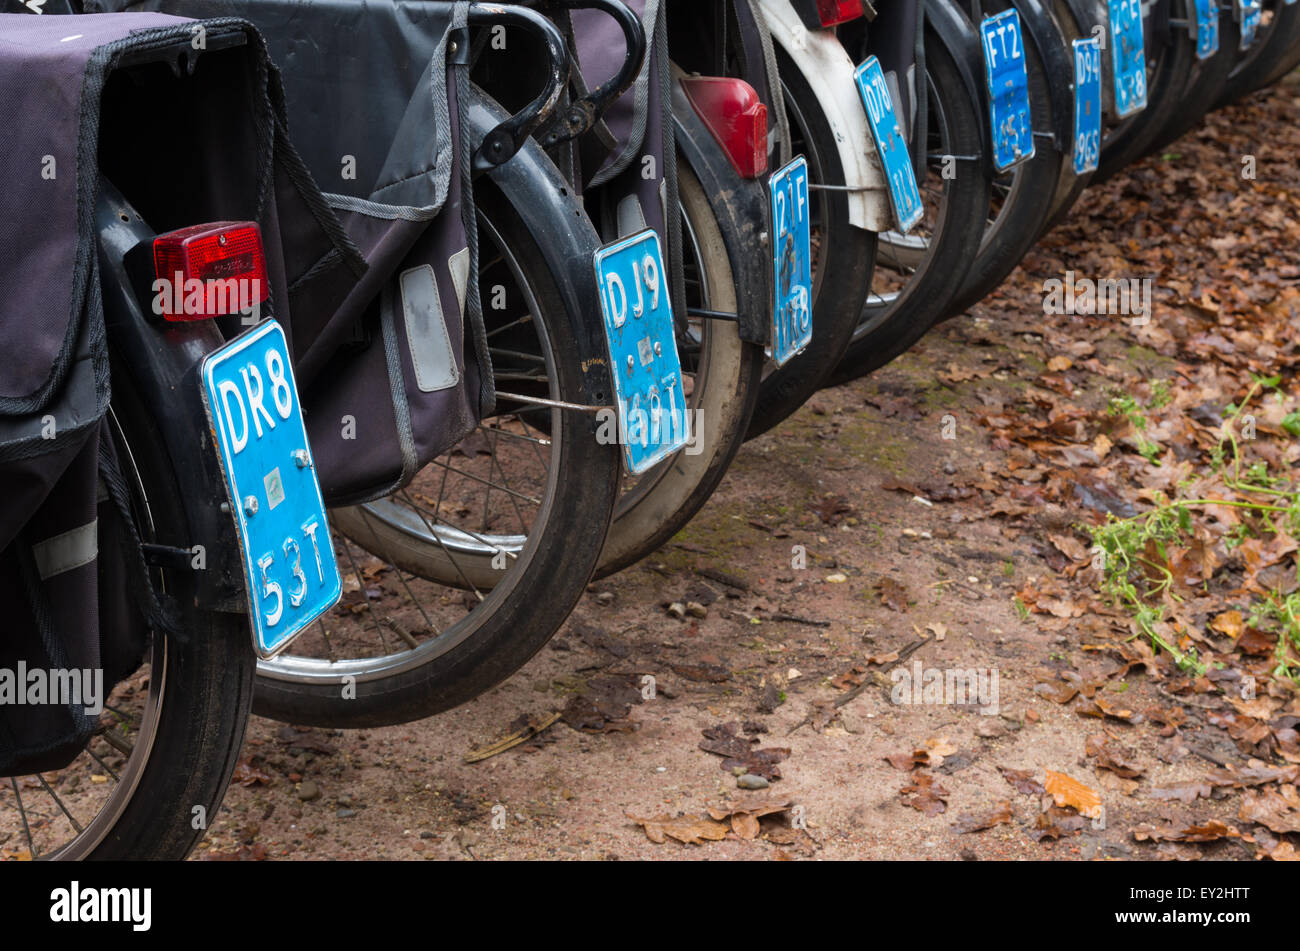 DENEKAMP, Niederlande - 15. November 2014: Vintage Solex Moped zu mieten. Die Mopeds wurden zwischen 1946 und 1988 (Abbrev produziert. Stockfoto